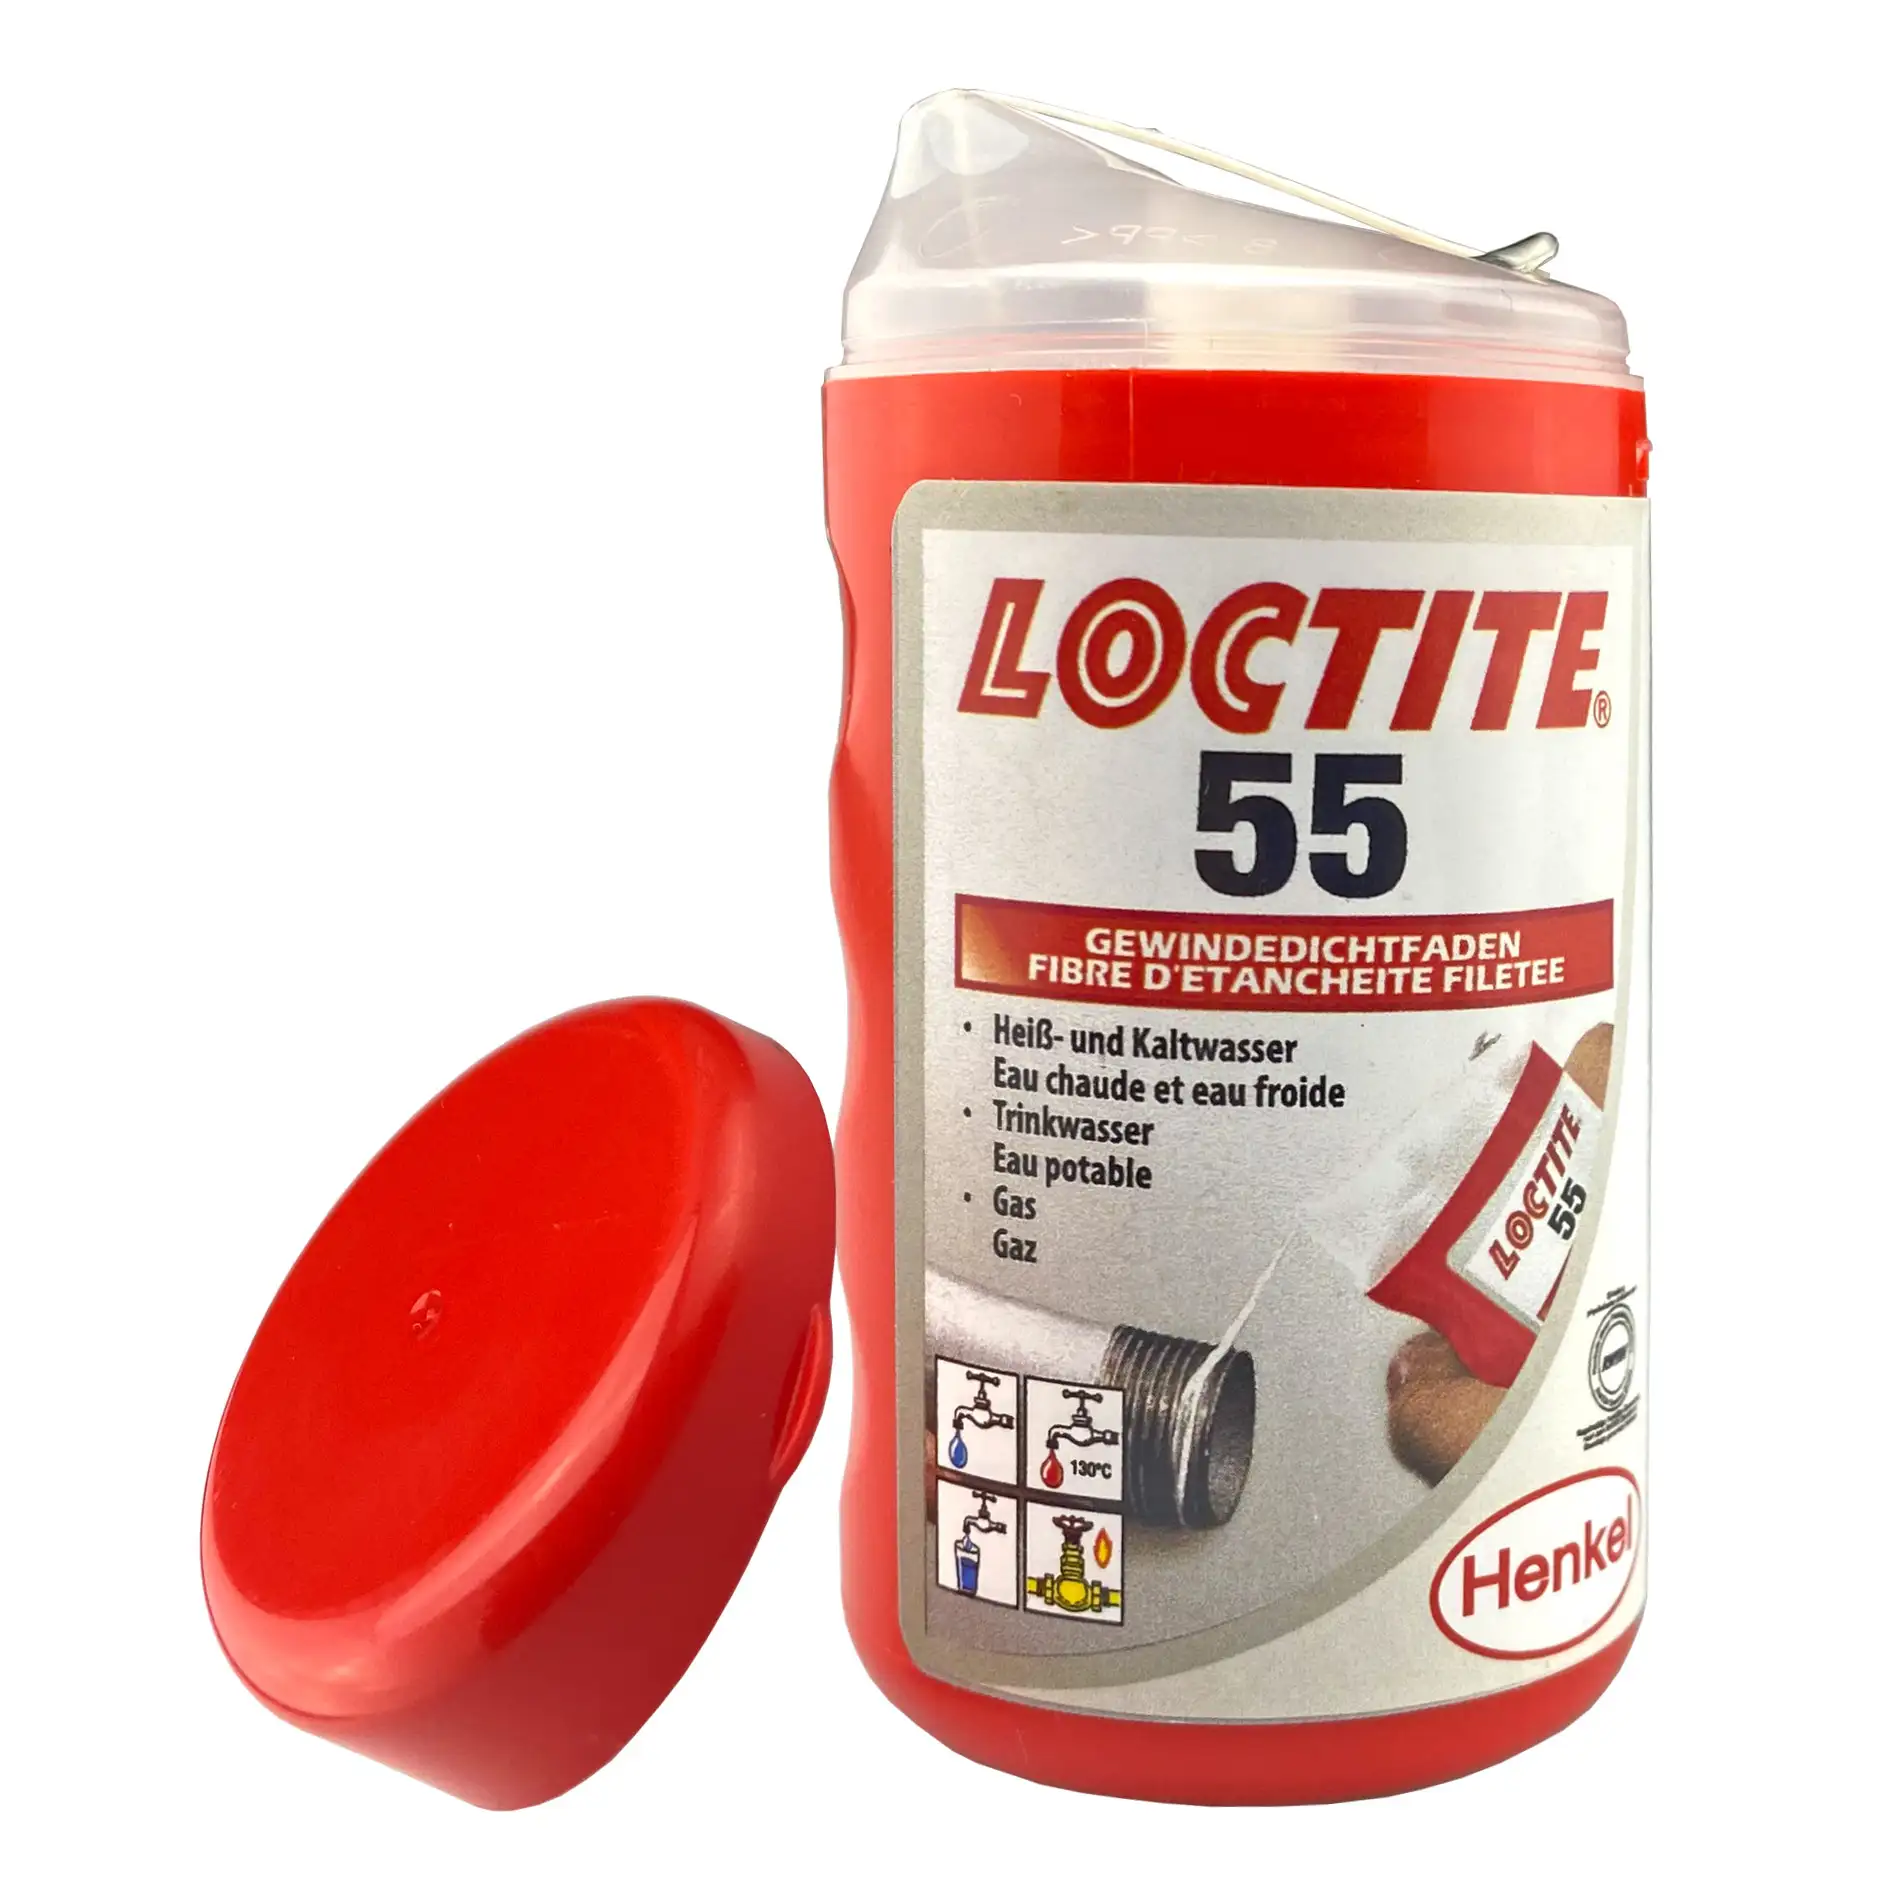 Loctite 55 Gewindedichtfaden Bild 1